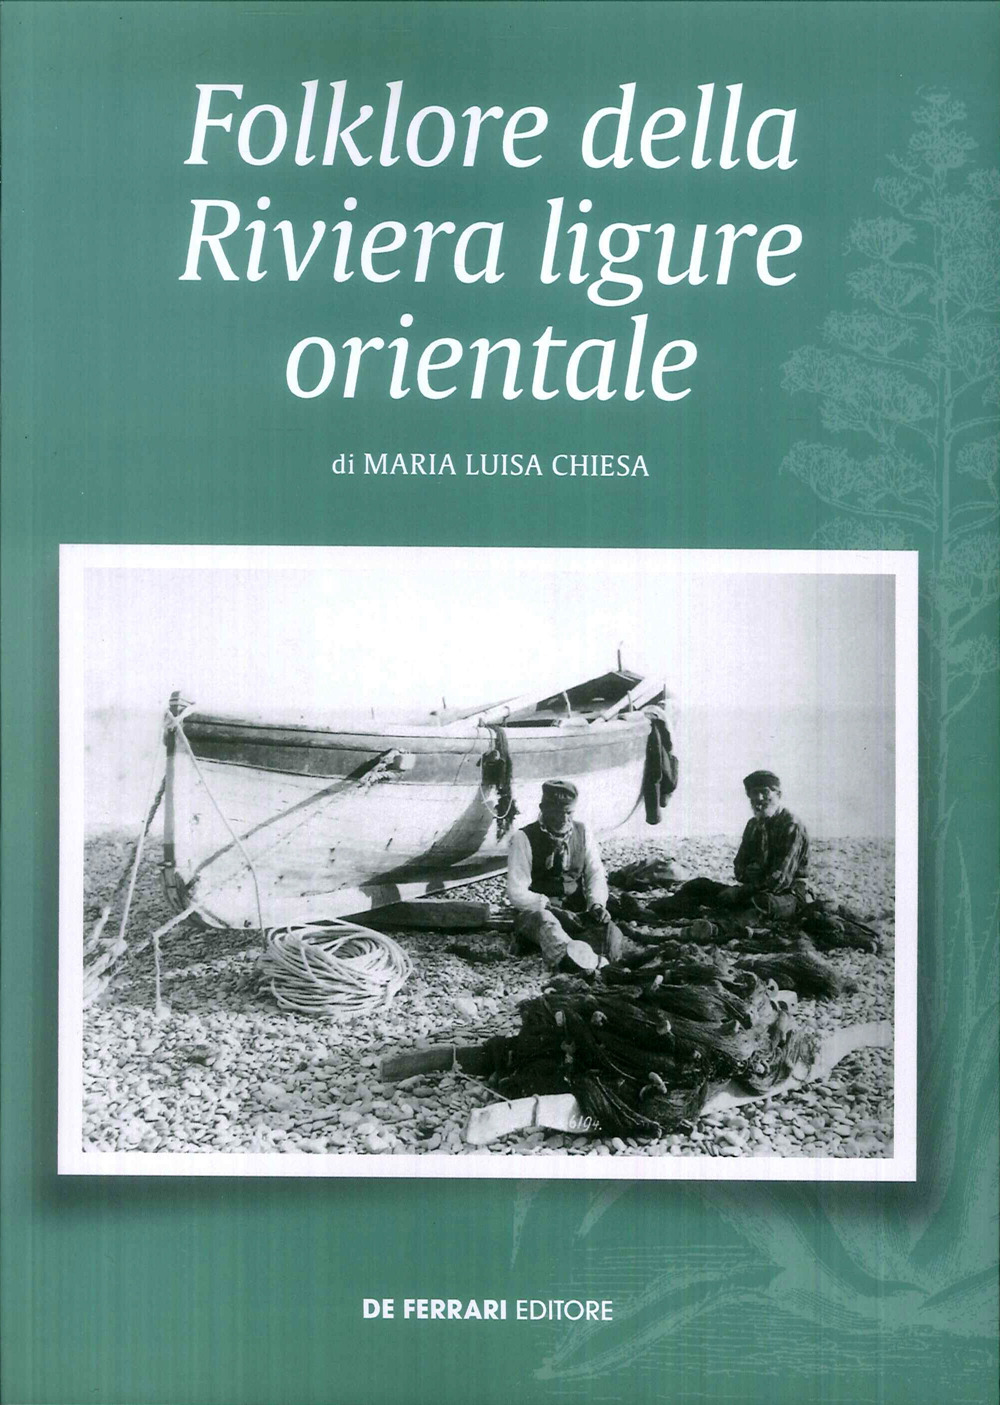 Folklore della riviera ligure orientale